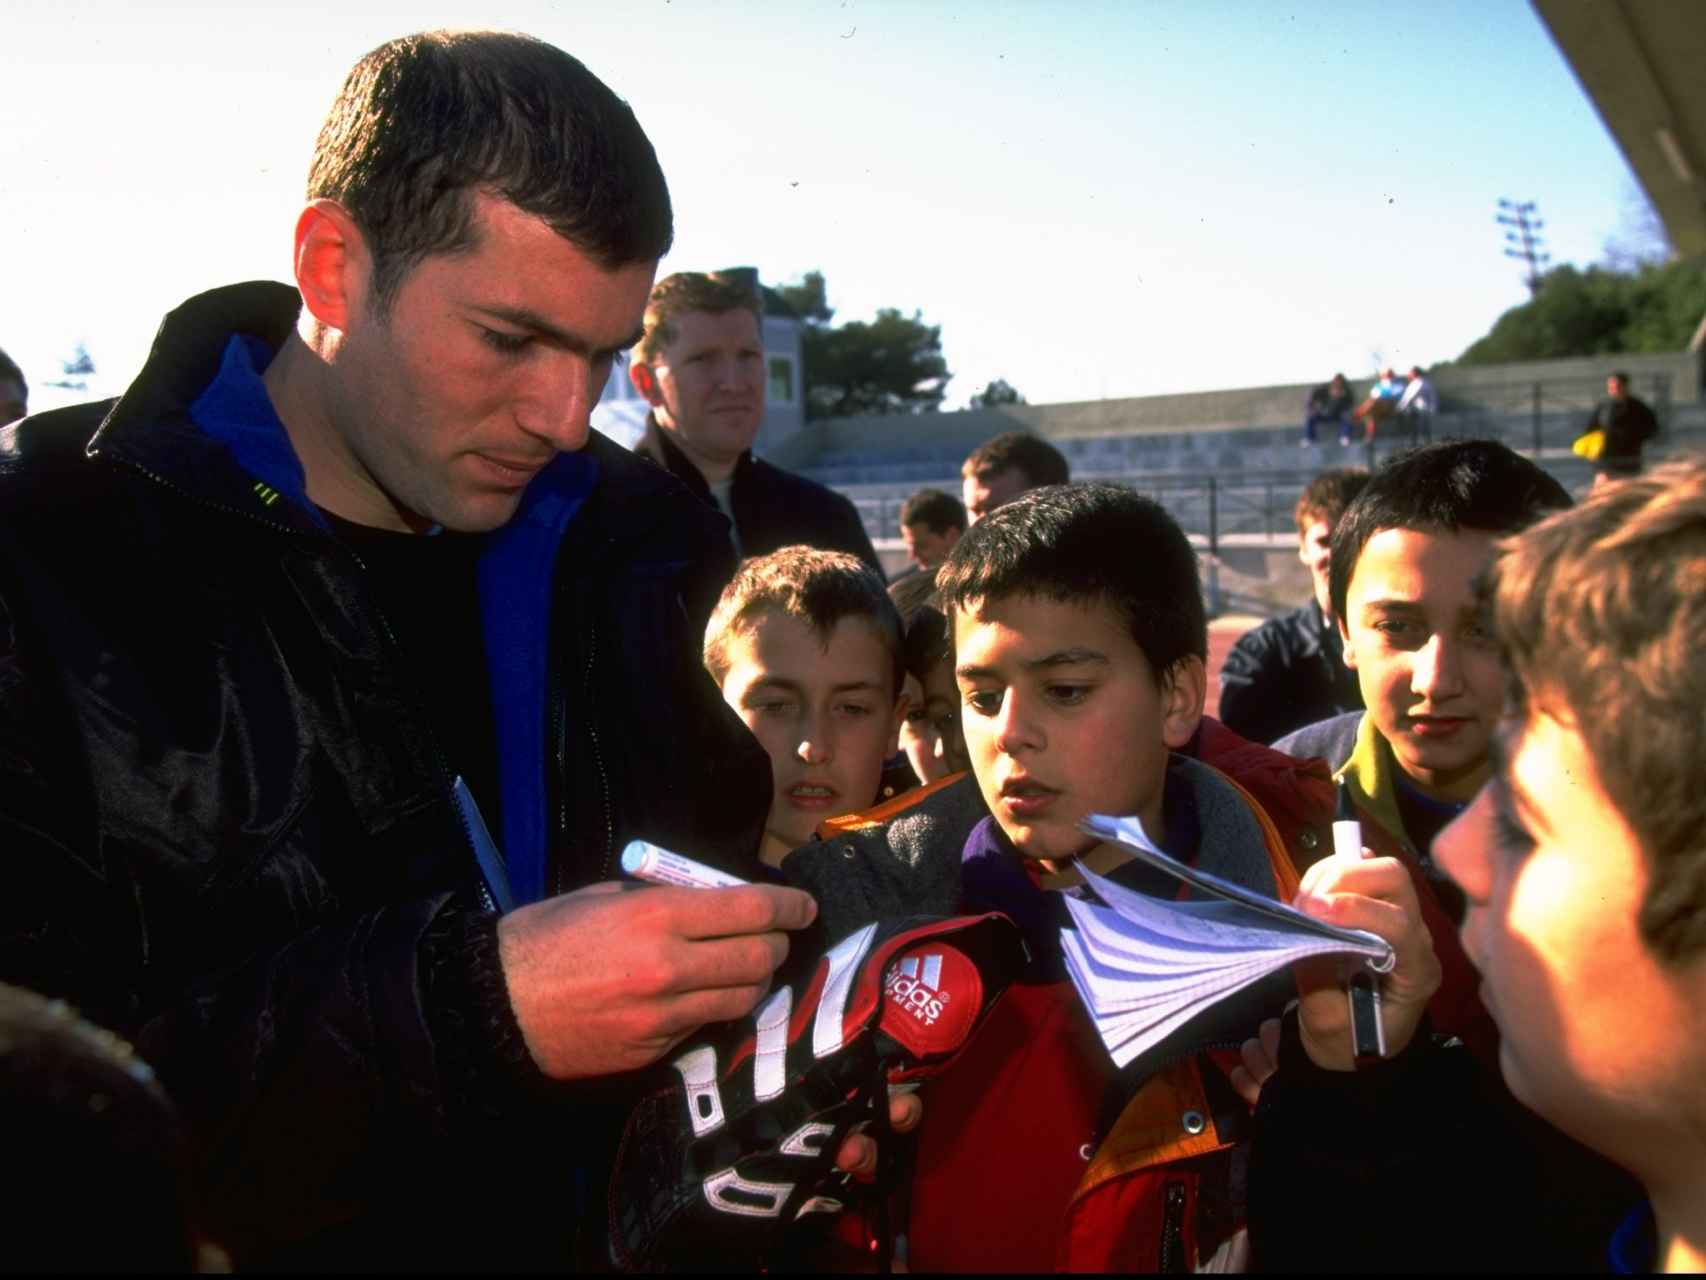 Zidane firma autógrafos en Barcelona en 1999.